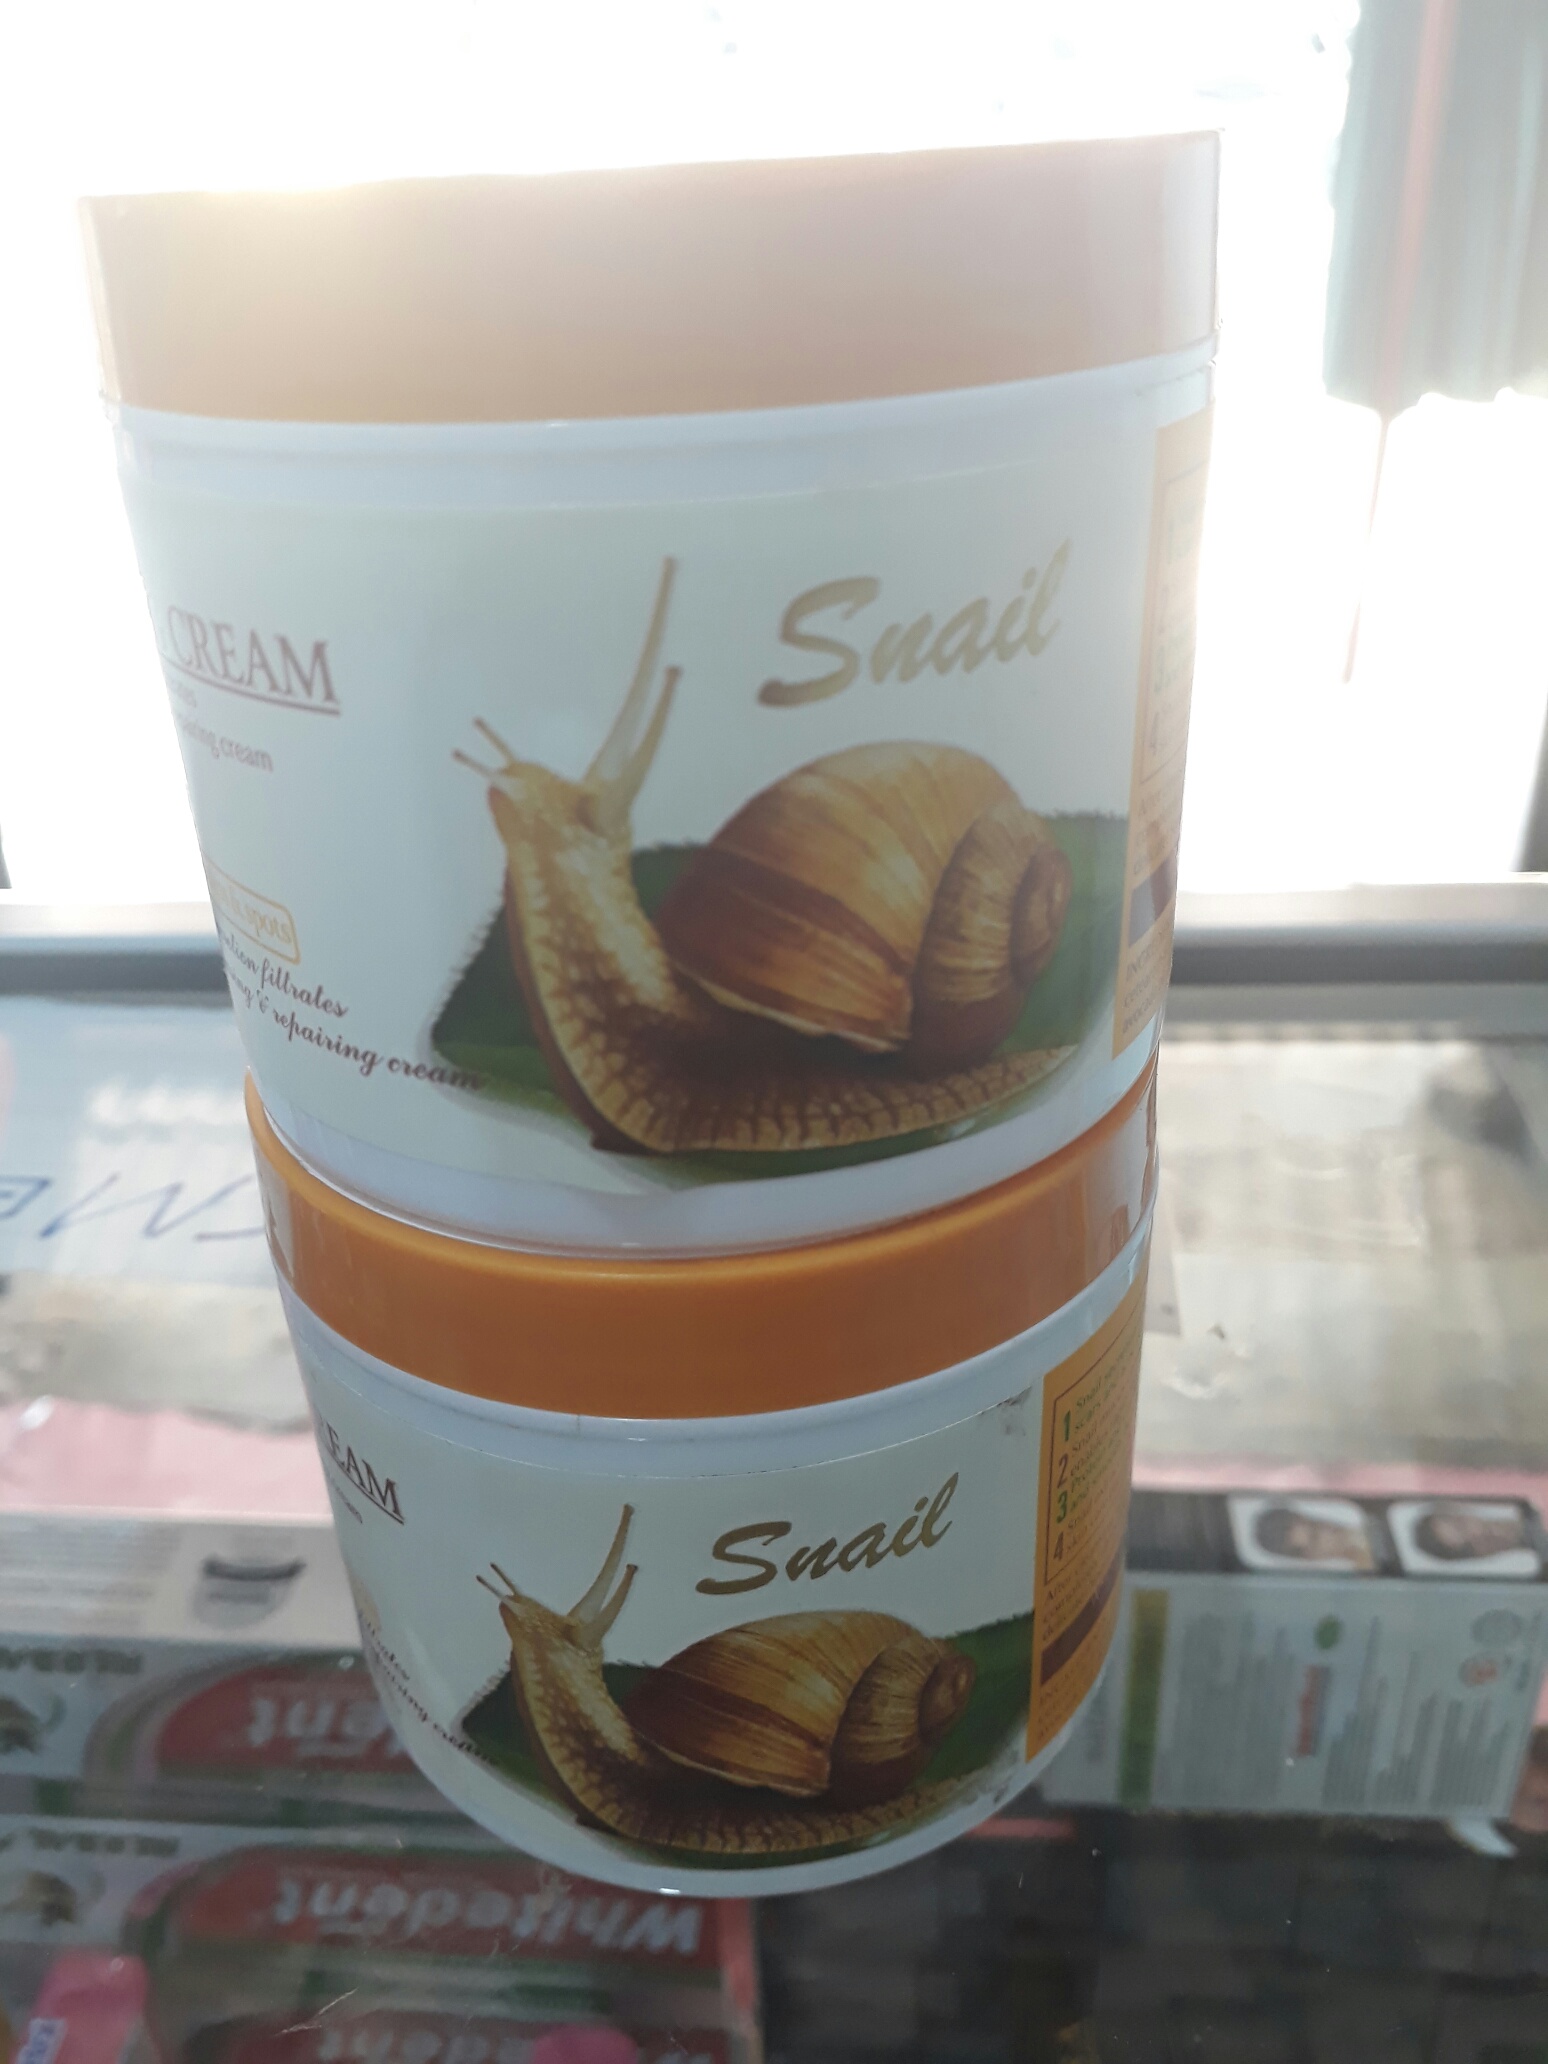 Snail Cream